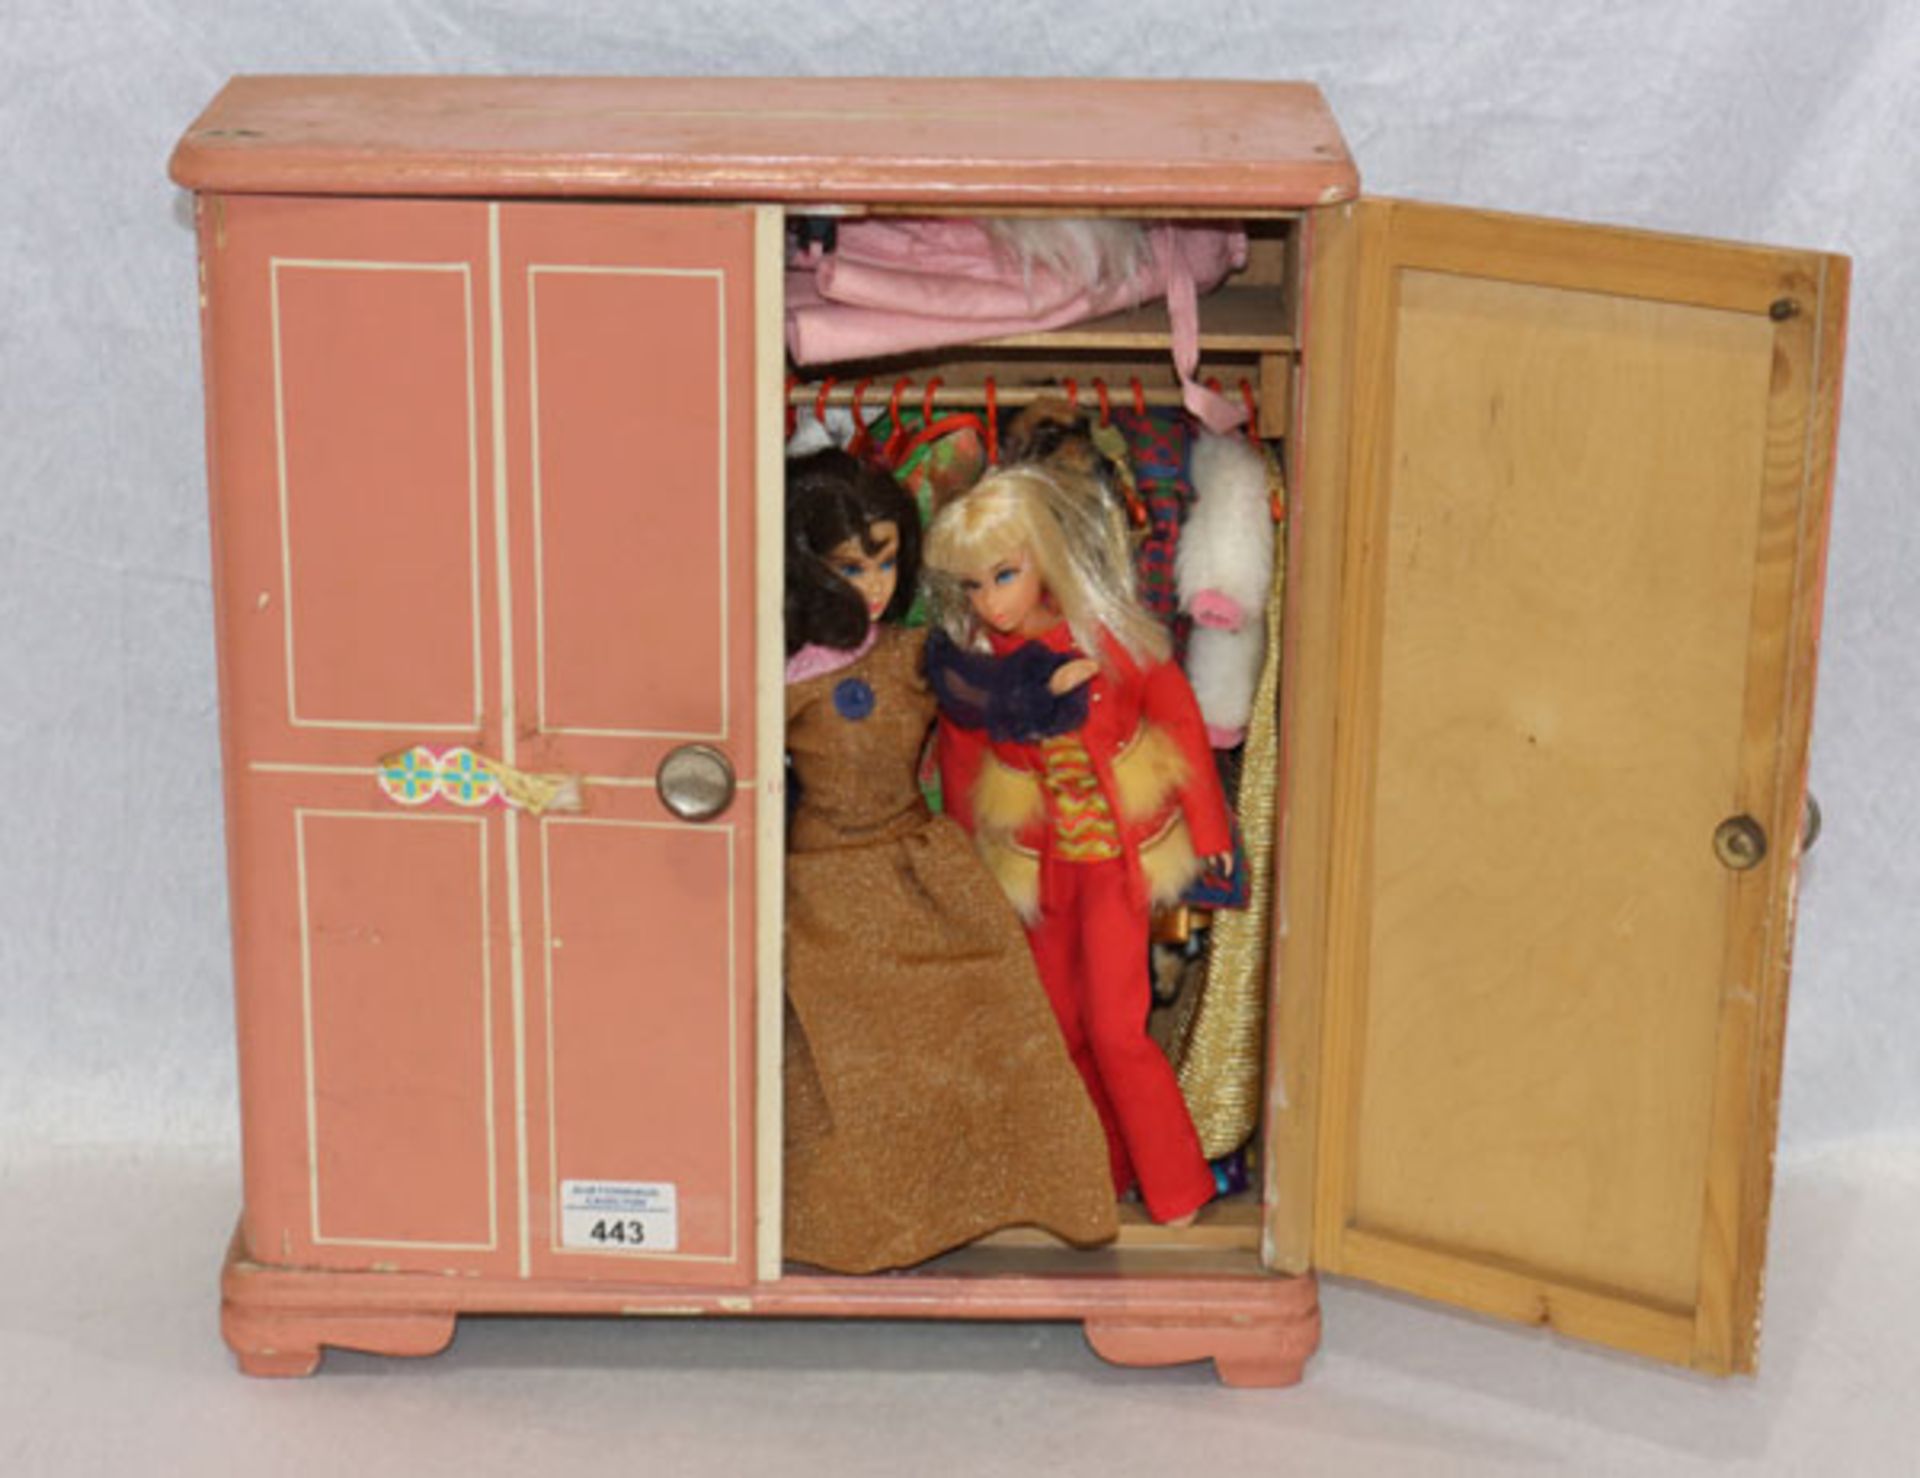 Puppen-Kleiderschrank mit 2 Barbie Puppen und diverser Bekleidung, bespielt und bestossen, H 42